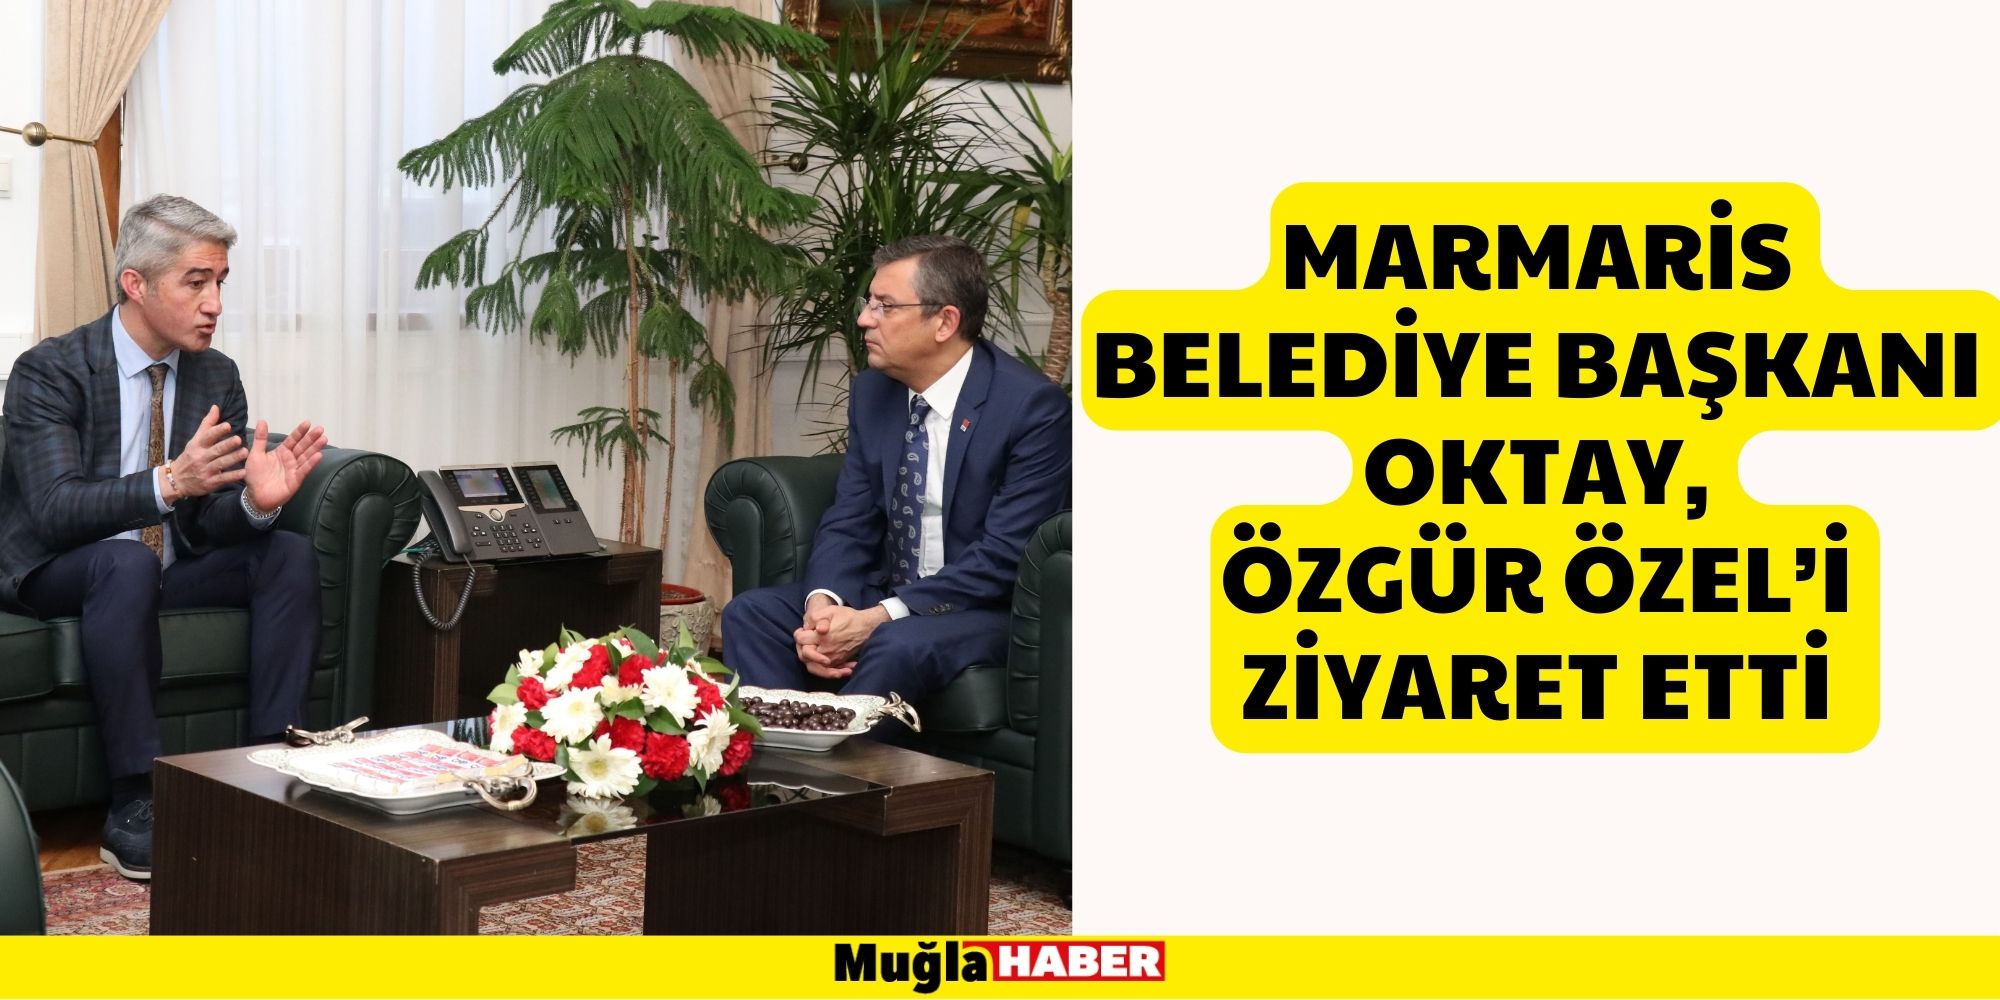 Marmaris Belediye Başkanı Oktay, Özgür Özel’i Ziyaret Etti